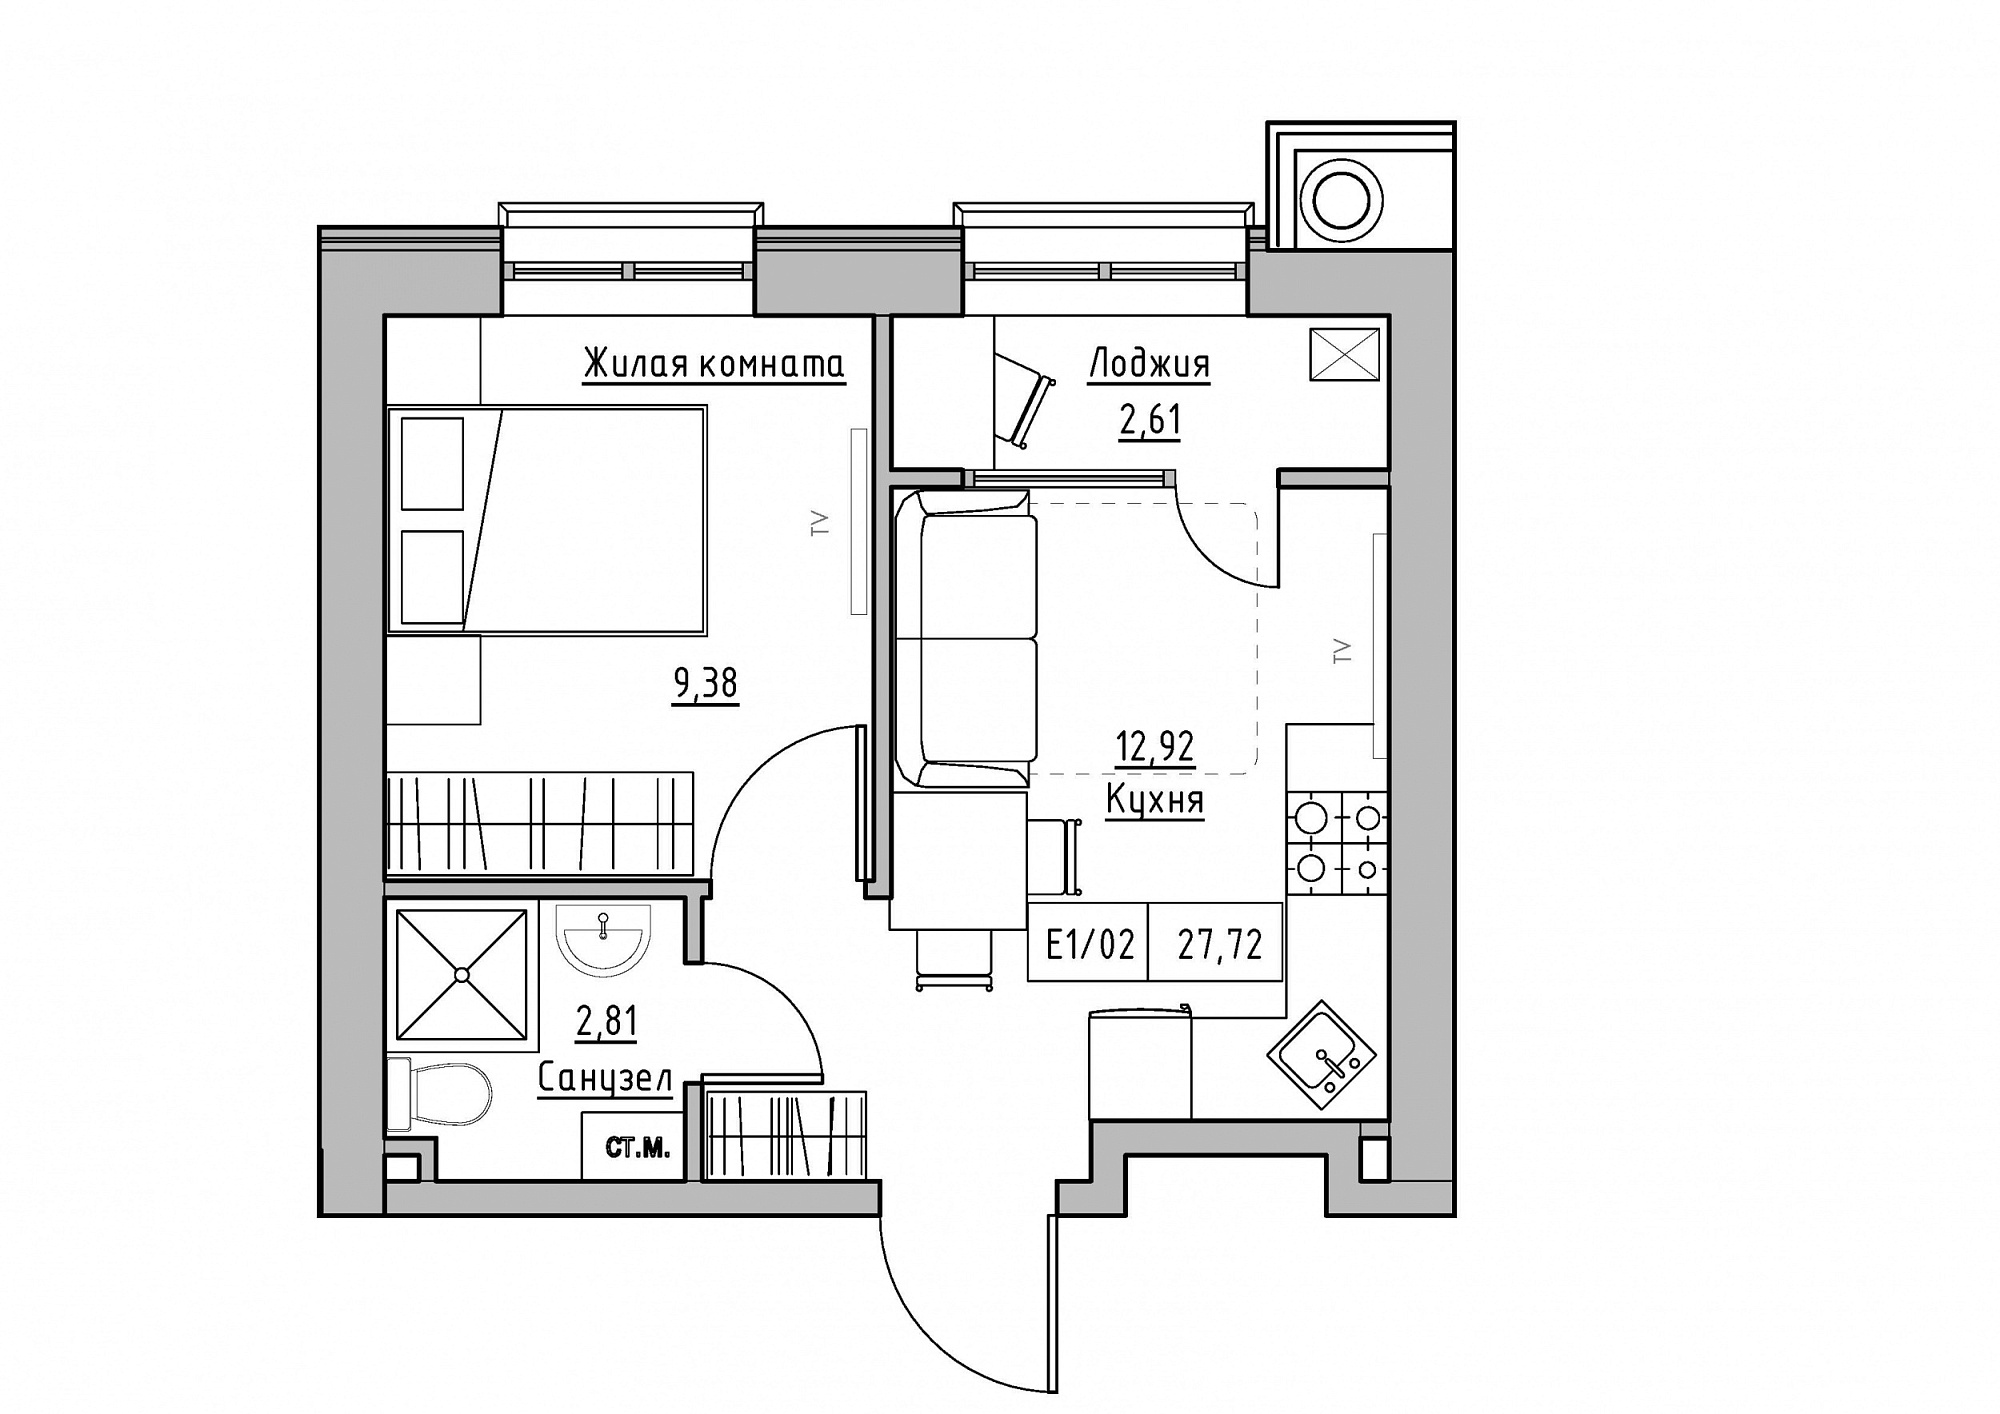 Планировка 1-к квартира площей 27.72м2, KS-012-02/0001.